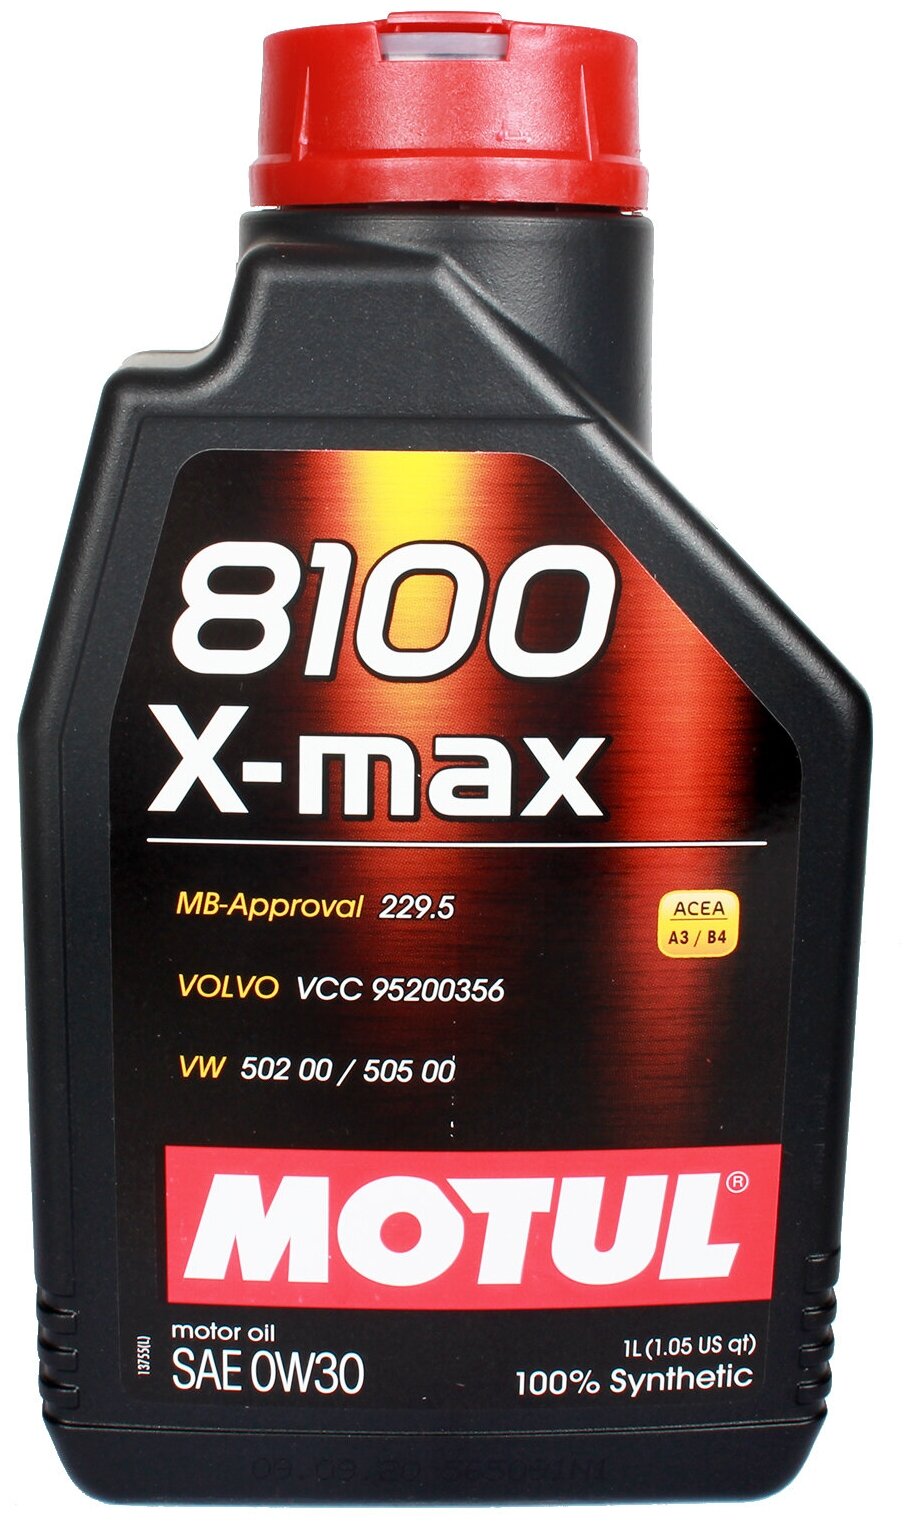 Масло моторное 0w30 motul 1л синтетика 8100 x-max a3/b4,sl, motul, 106569